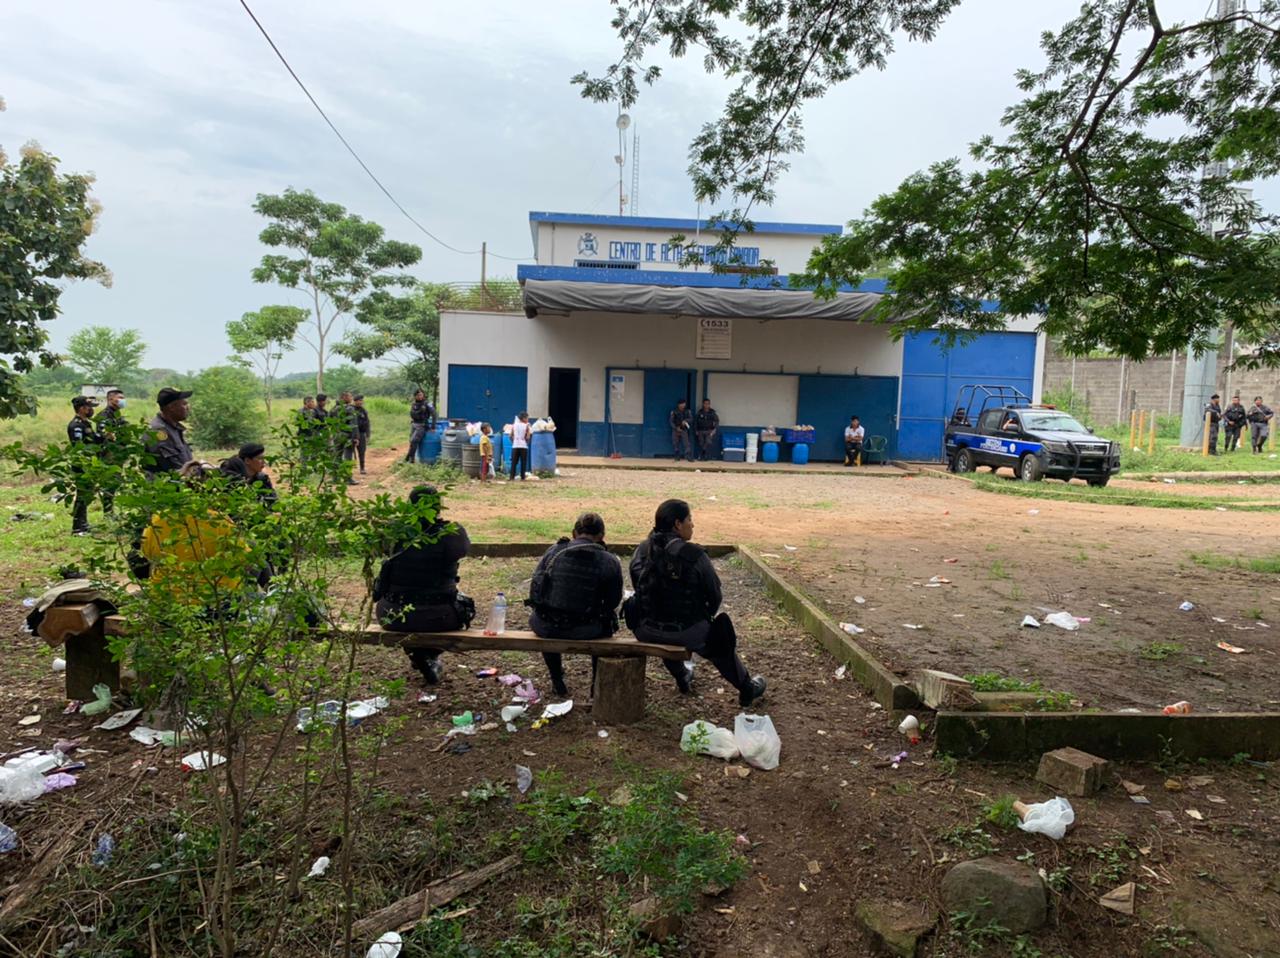 La Policía Nacional Civil resguarda los alrededores de la cárcel El Infiernito, en Escuintla, luego de un motín de reos. (Foto Prensa Libre: Carlos E. Paredes)